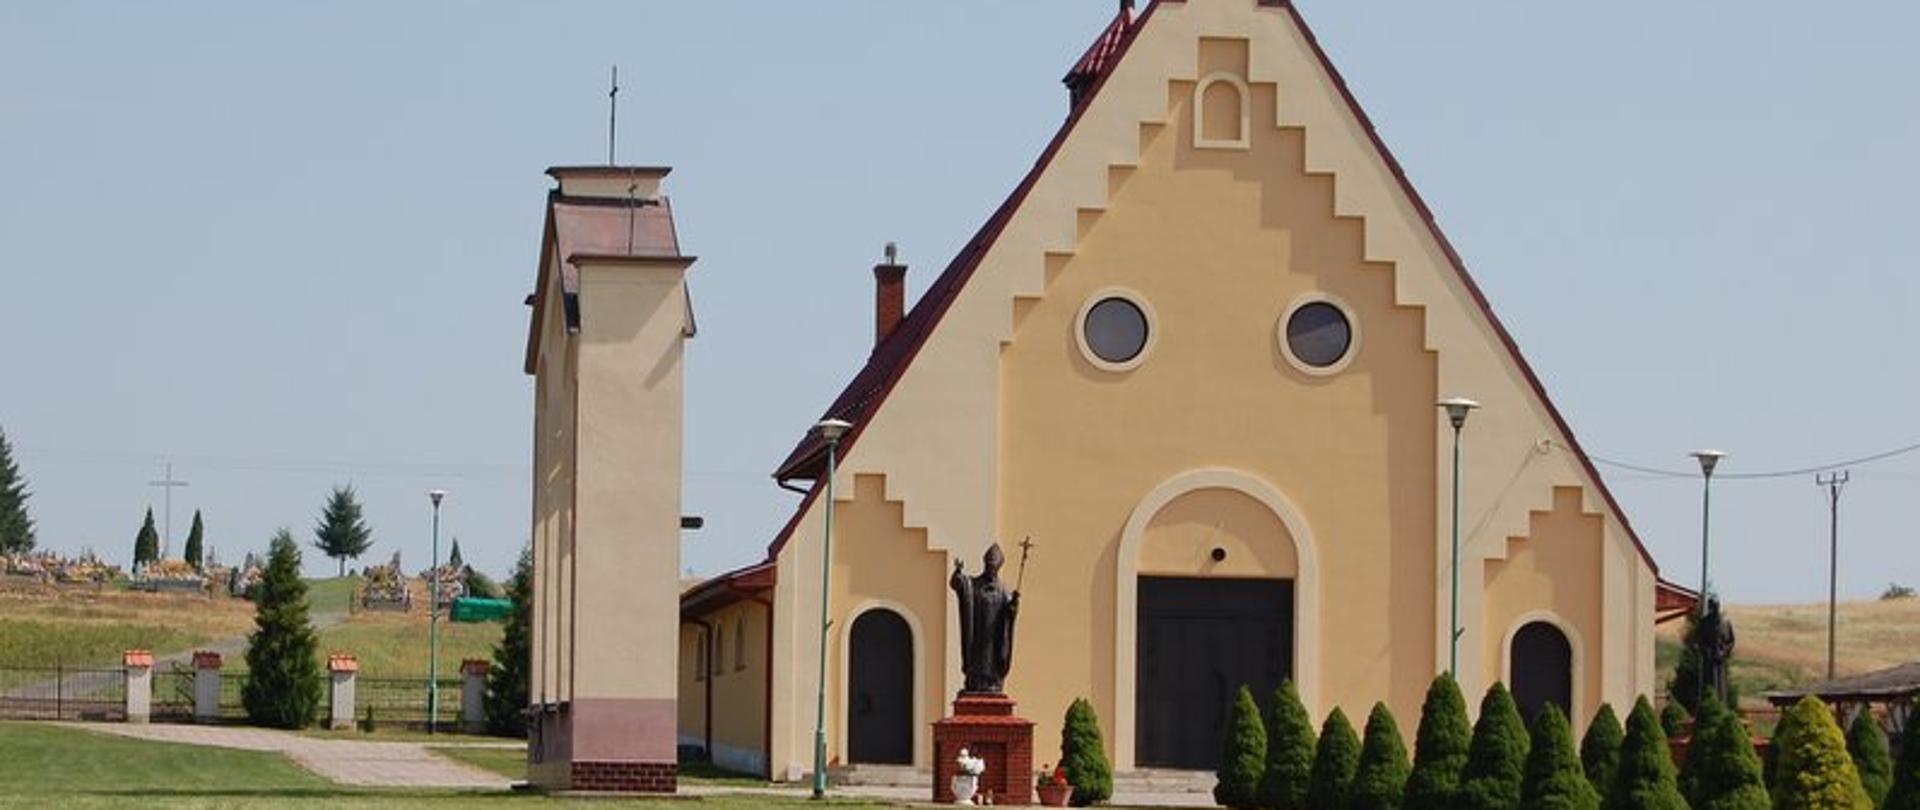 Bezowy kościół z czerwonym dachem i krzyżem na dachu. Przed kościołem figura Jana Pawła II i posadzone zielone drzewka. 